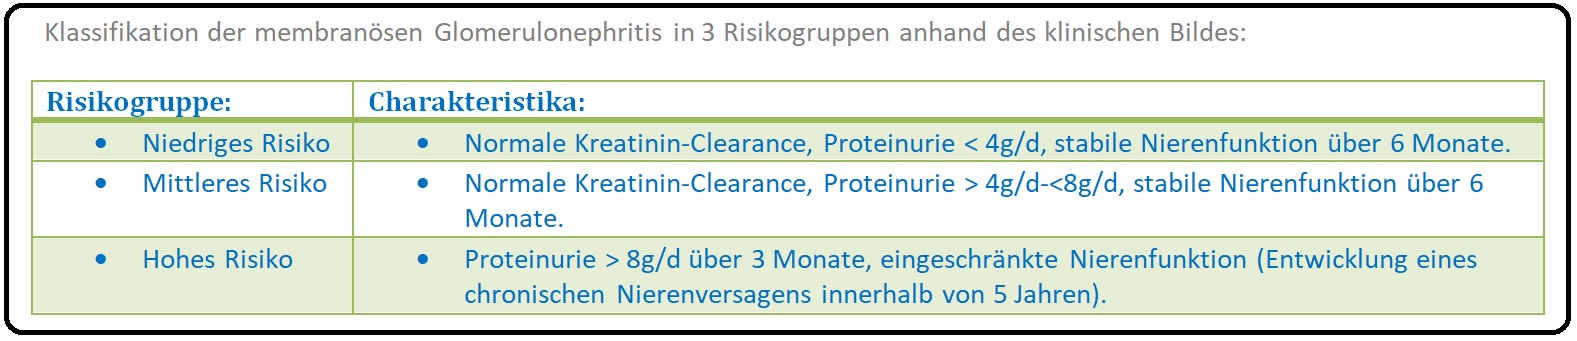 1117 Klassifikation der membranösen Glomerulonephritis in 3 Risikogruppen anhand des klinischen Bildes